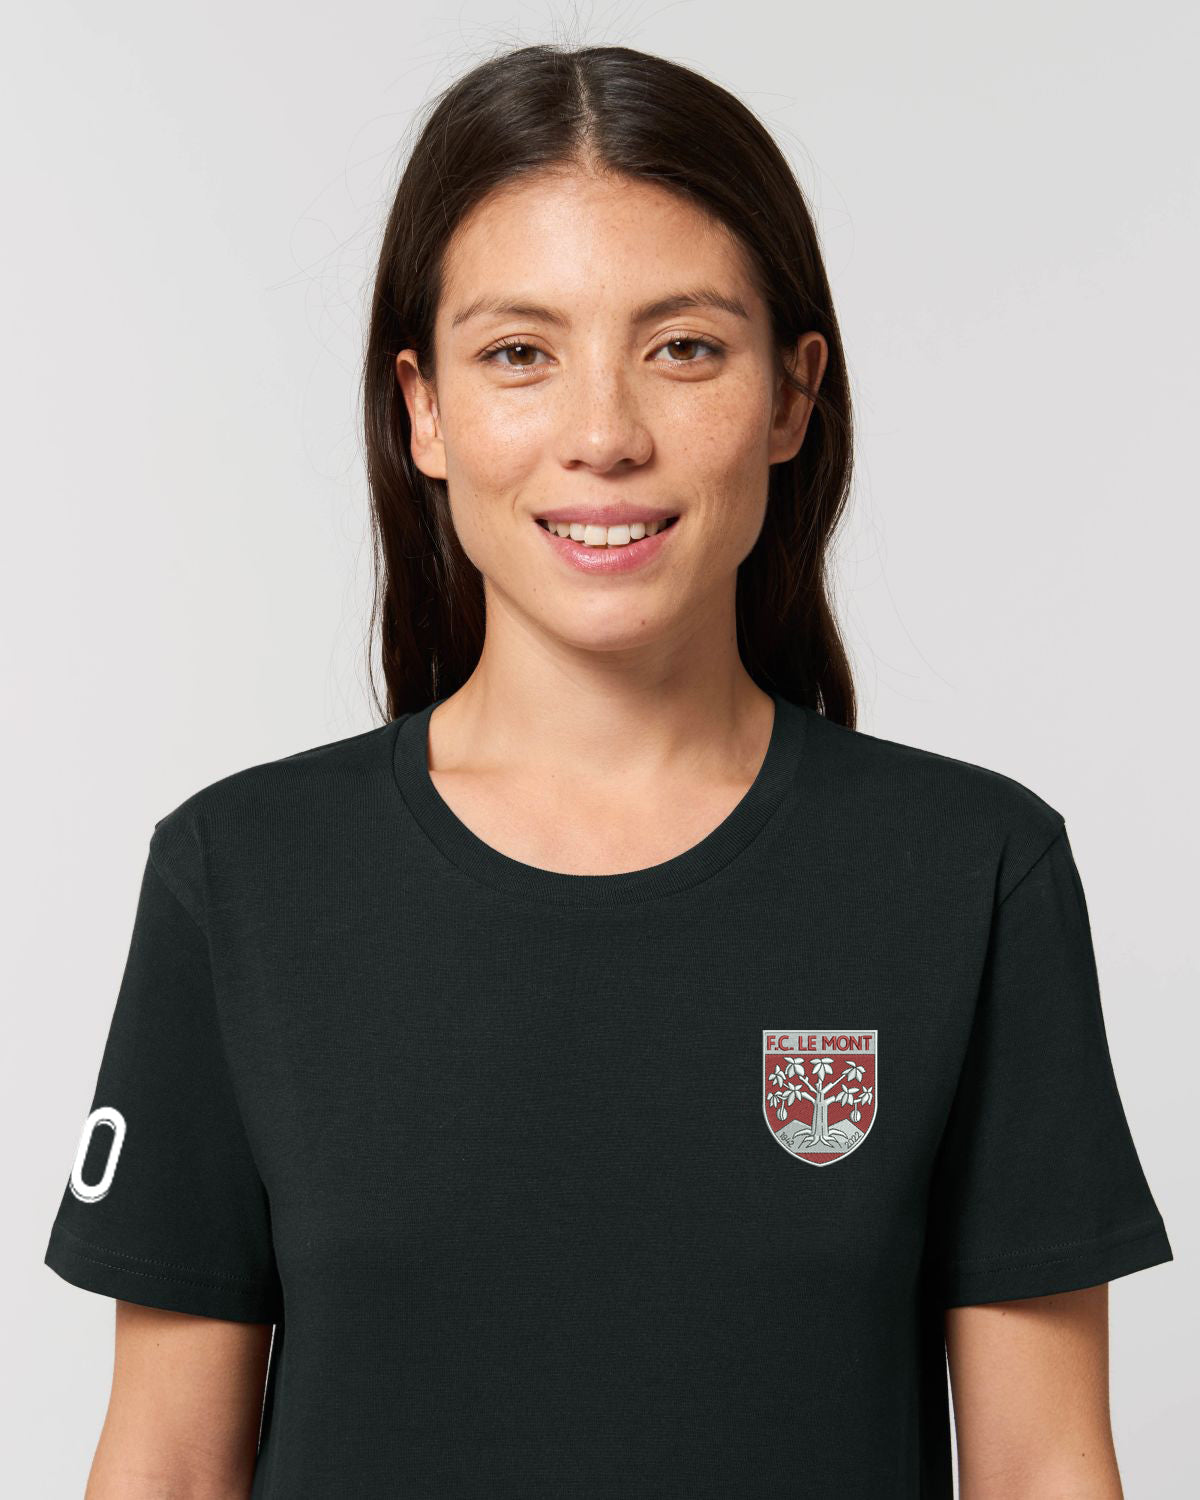 T -shirt FC Le Mont - Woman